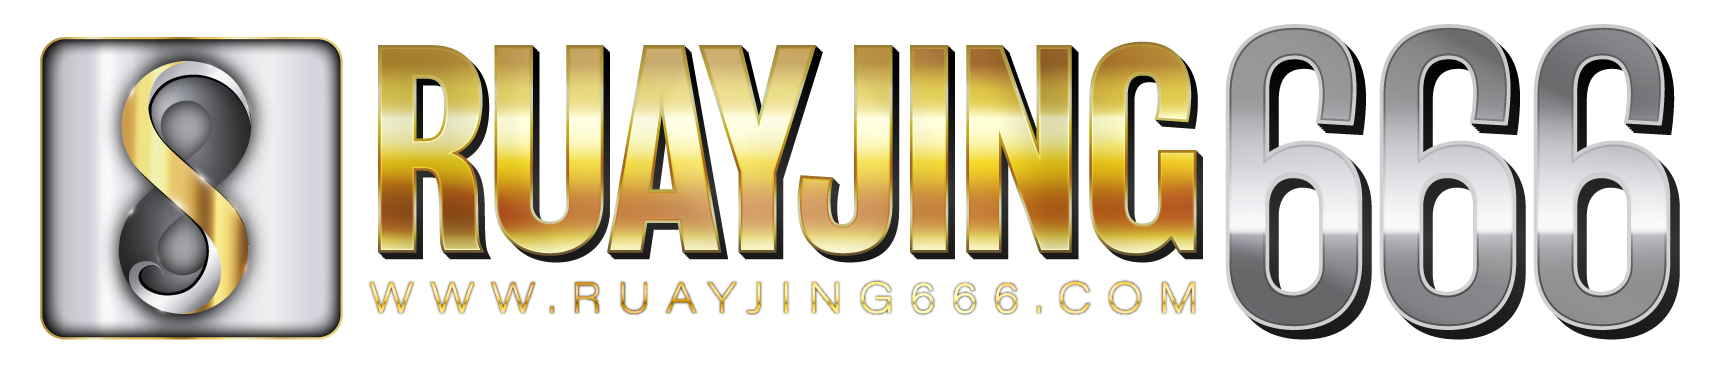 RUAYJING666 Logo